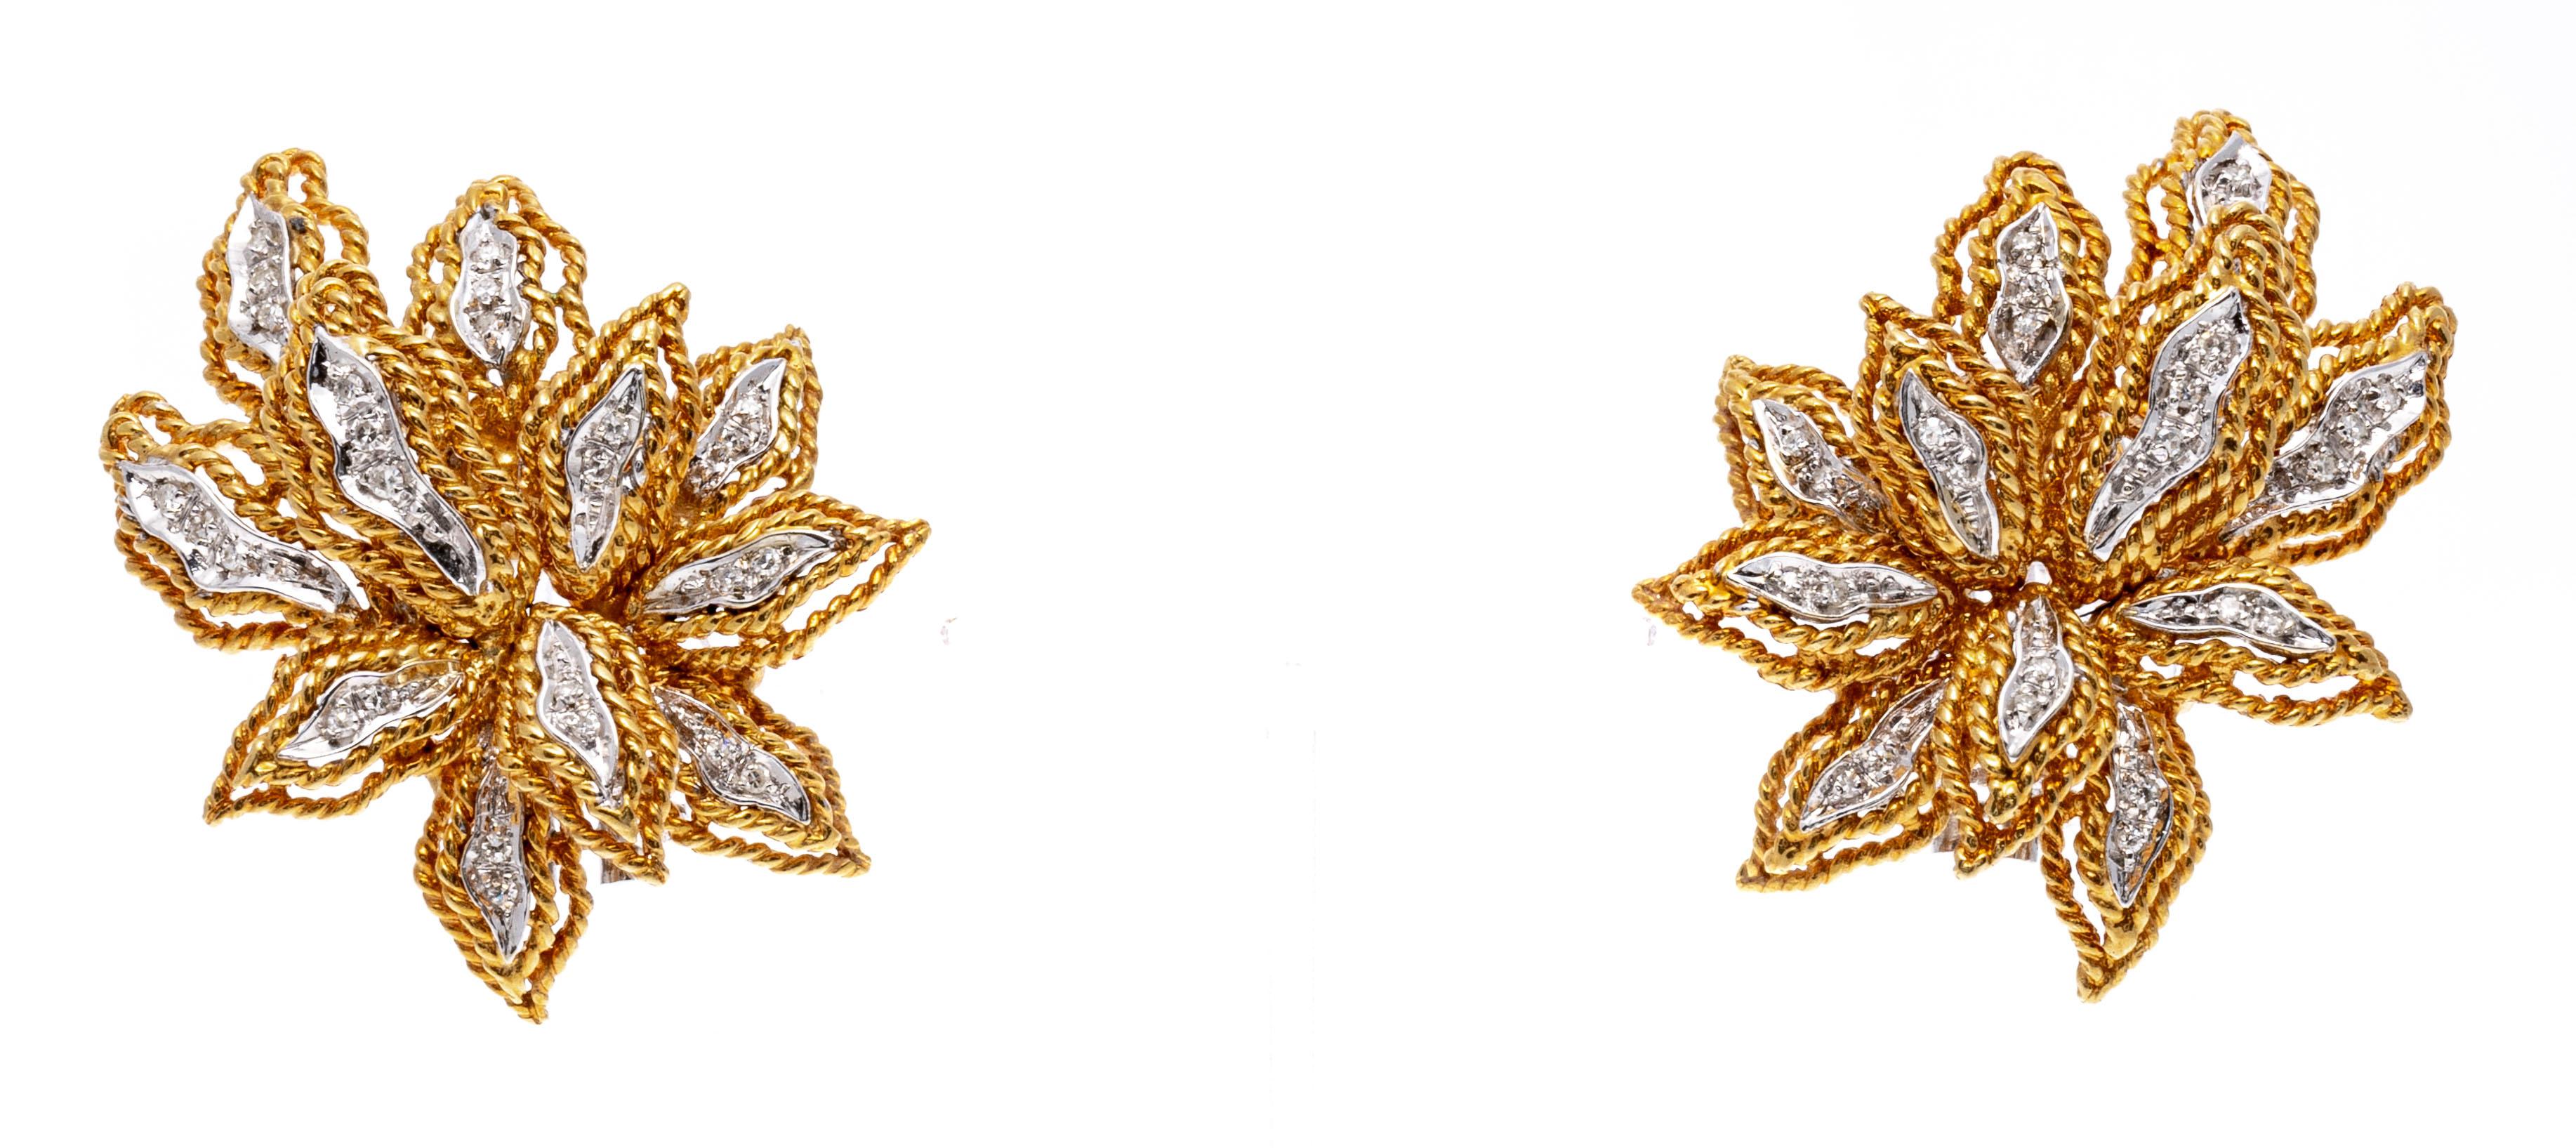 18k Gelbgold Glamorous Diamond Set Blattmotiv Ohrringe, ca. 0.13 TCW
Diese glamourösen Ohrringe sind mit runden, facettierten Diamanten (ca. 0,13 TCW) verziert und mit einer doppelten Kordel eingefasst. Die Ohrringe haben keine Stifte, sondern